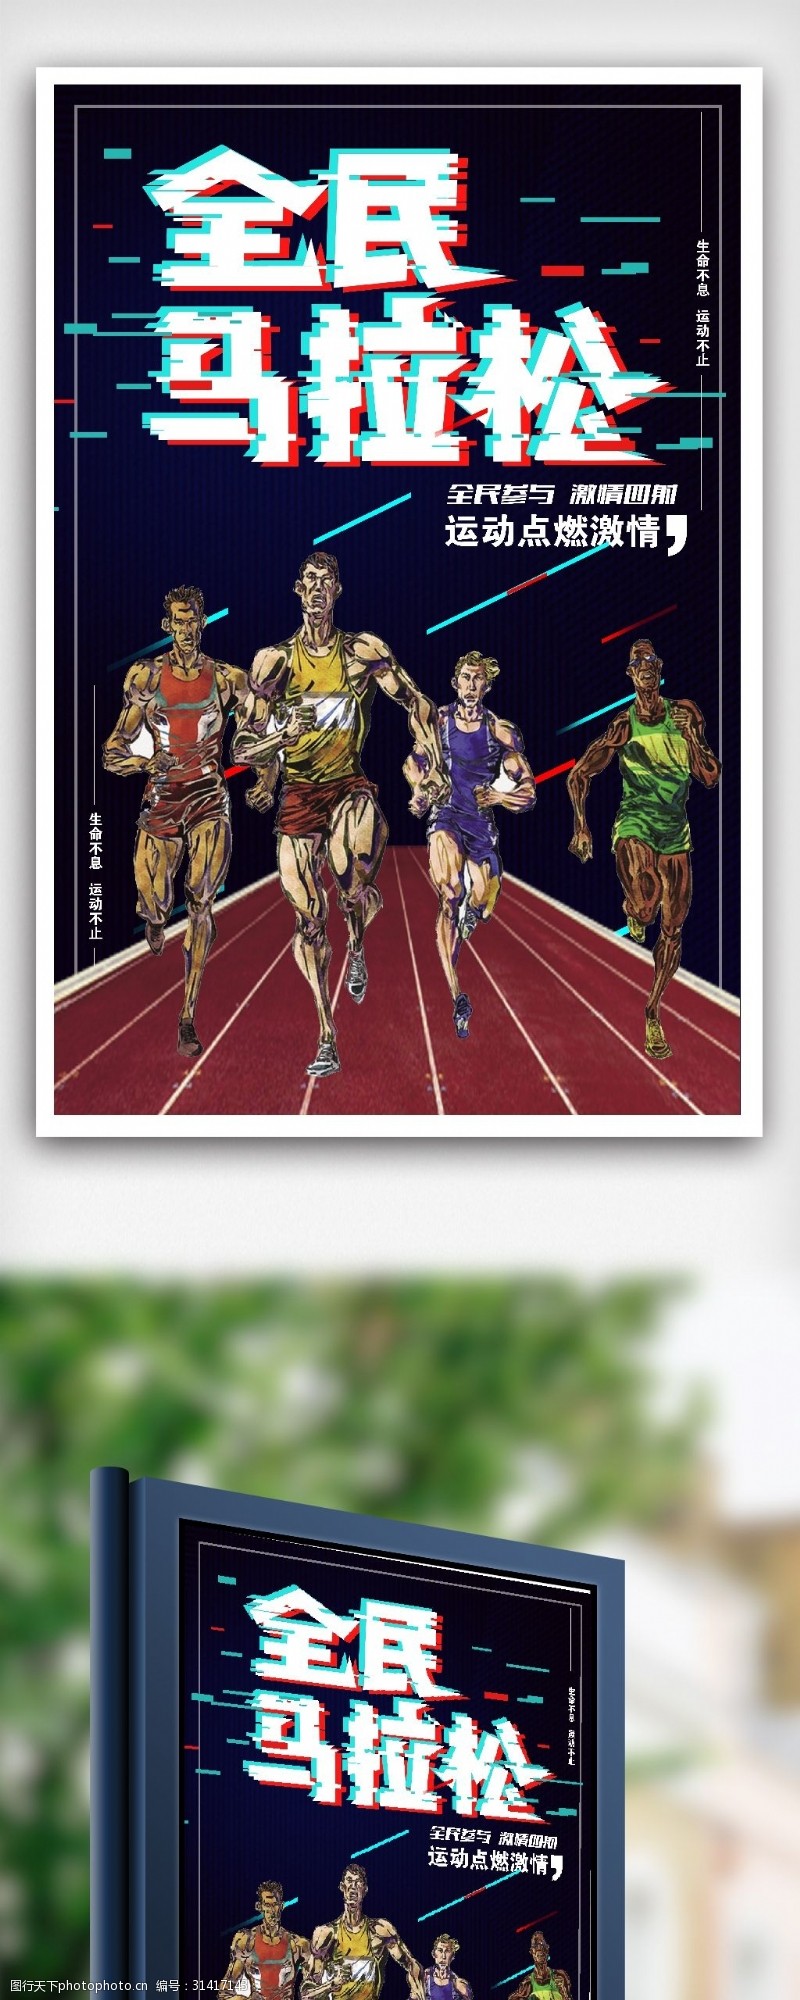 梦想青春最新流行马拉松运动比赛体育素材下载